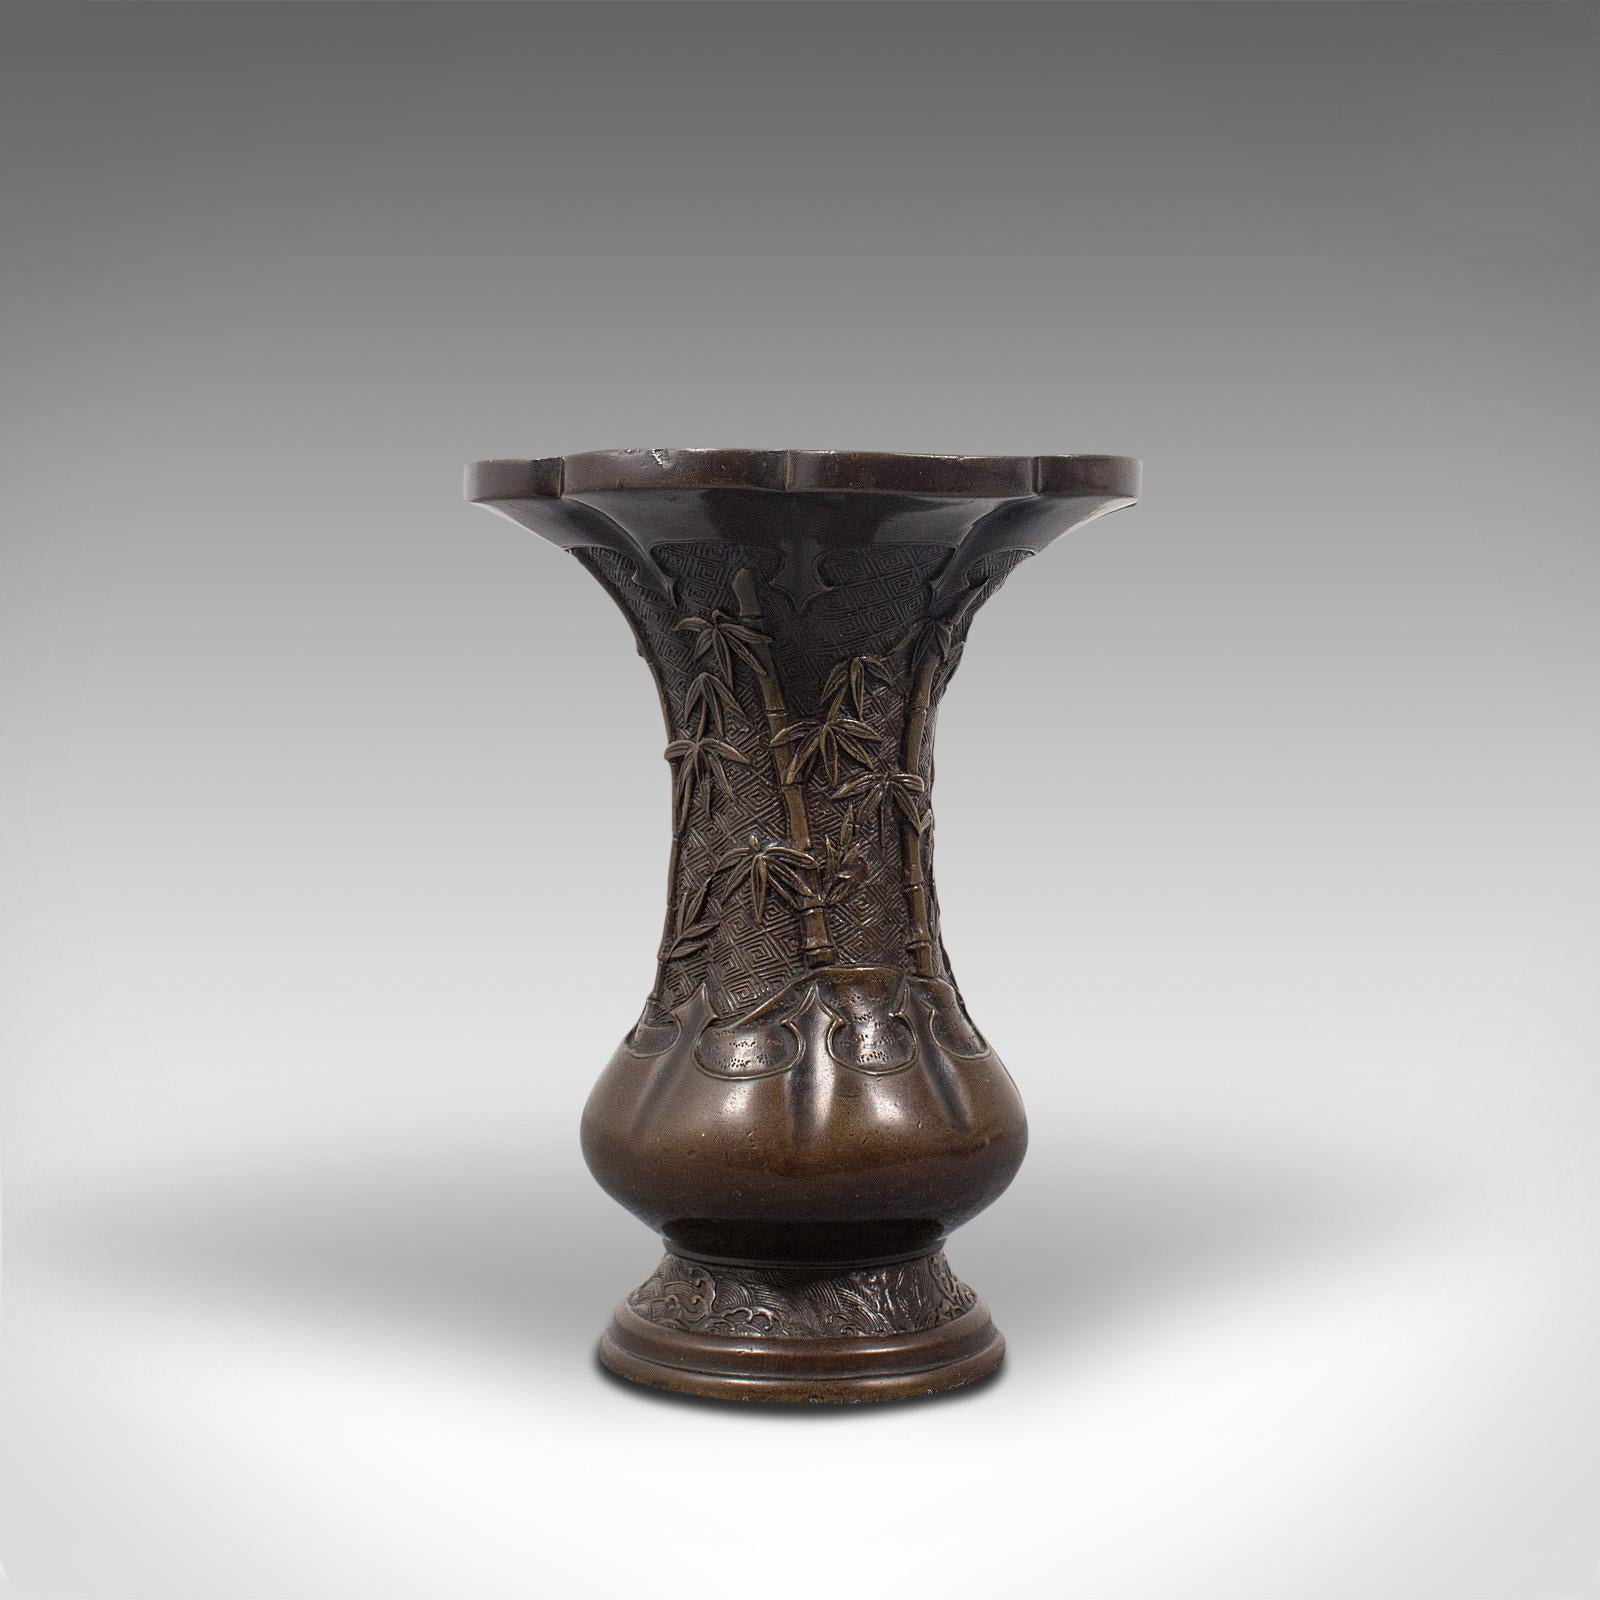 Dies ist eine antike orientalische Vase. Chinesische Baluster-Urne aus Bronze aus der späten viktorianischen Zeit, um 1900.

Hervorragende dekorative Wirkung
Zeigt eine wünschenswerte gealterte Patina - eine kleine Delle bei genauer